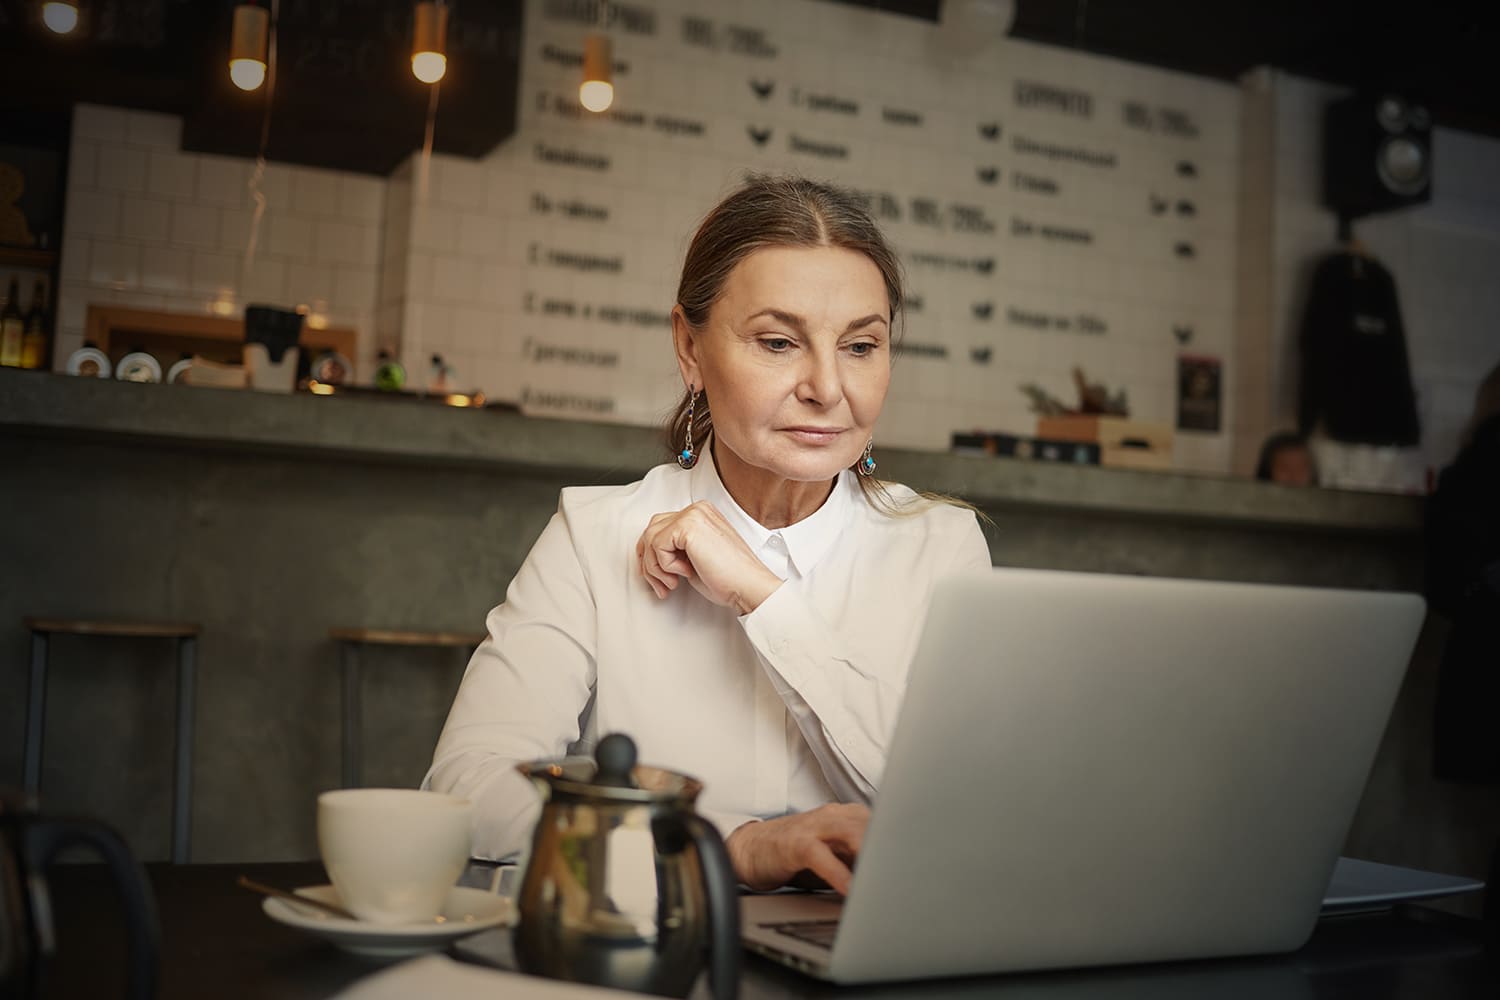 Mulher idosa, de pele branca e cabelos castanhos, usando um computador, para ilustrar "5 motivos para contratar um idoso”.